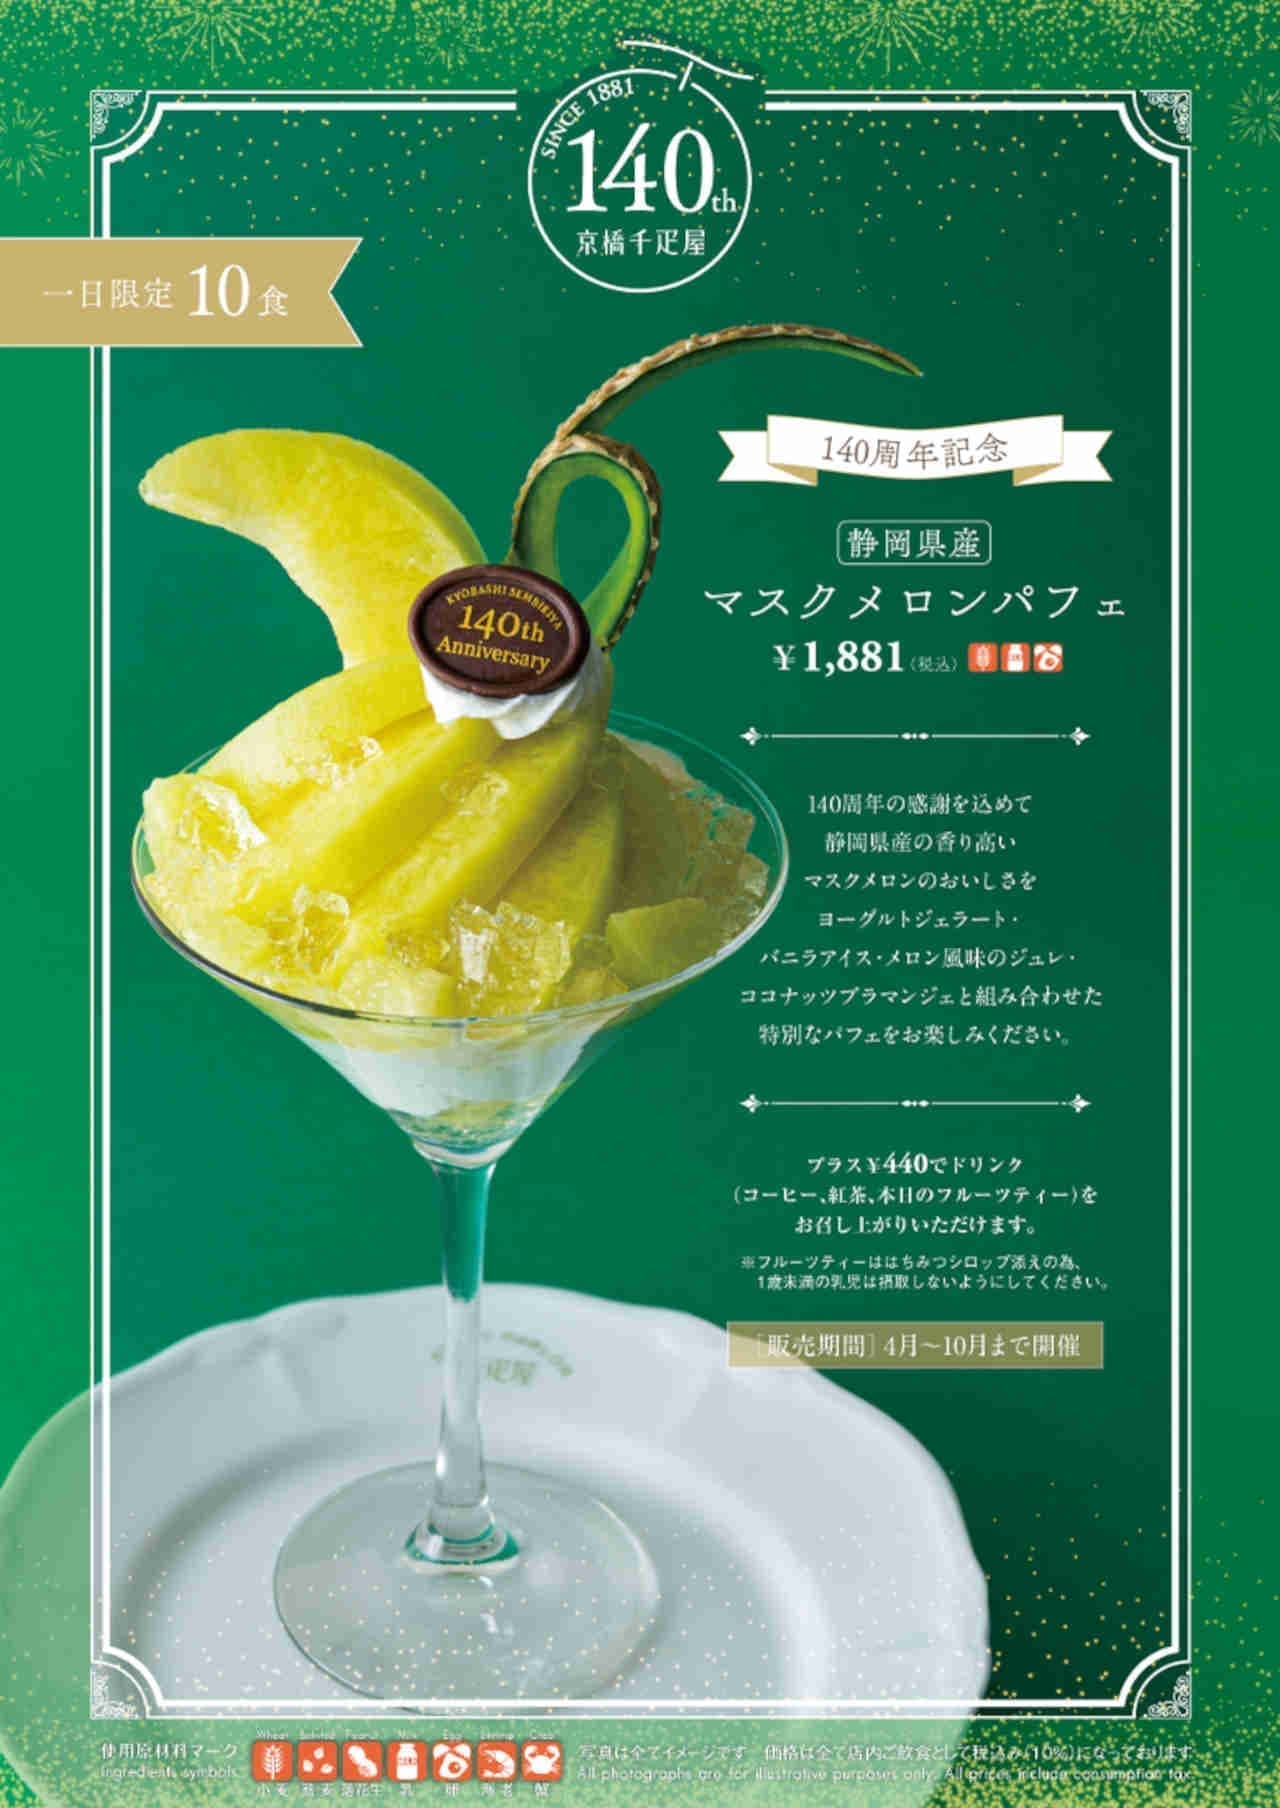 Kyobashi Senbiya "140th Anniversary Melon Parfait"